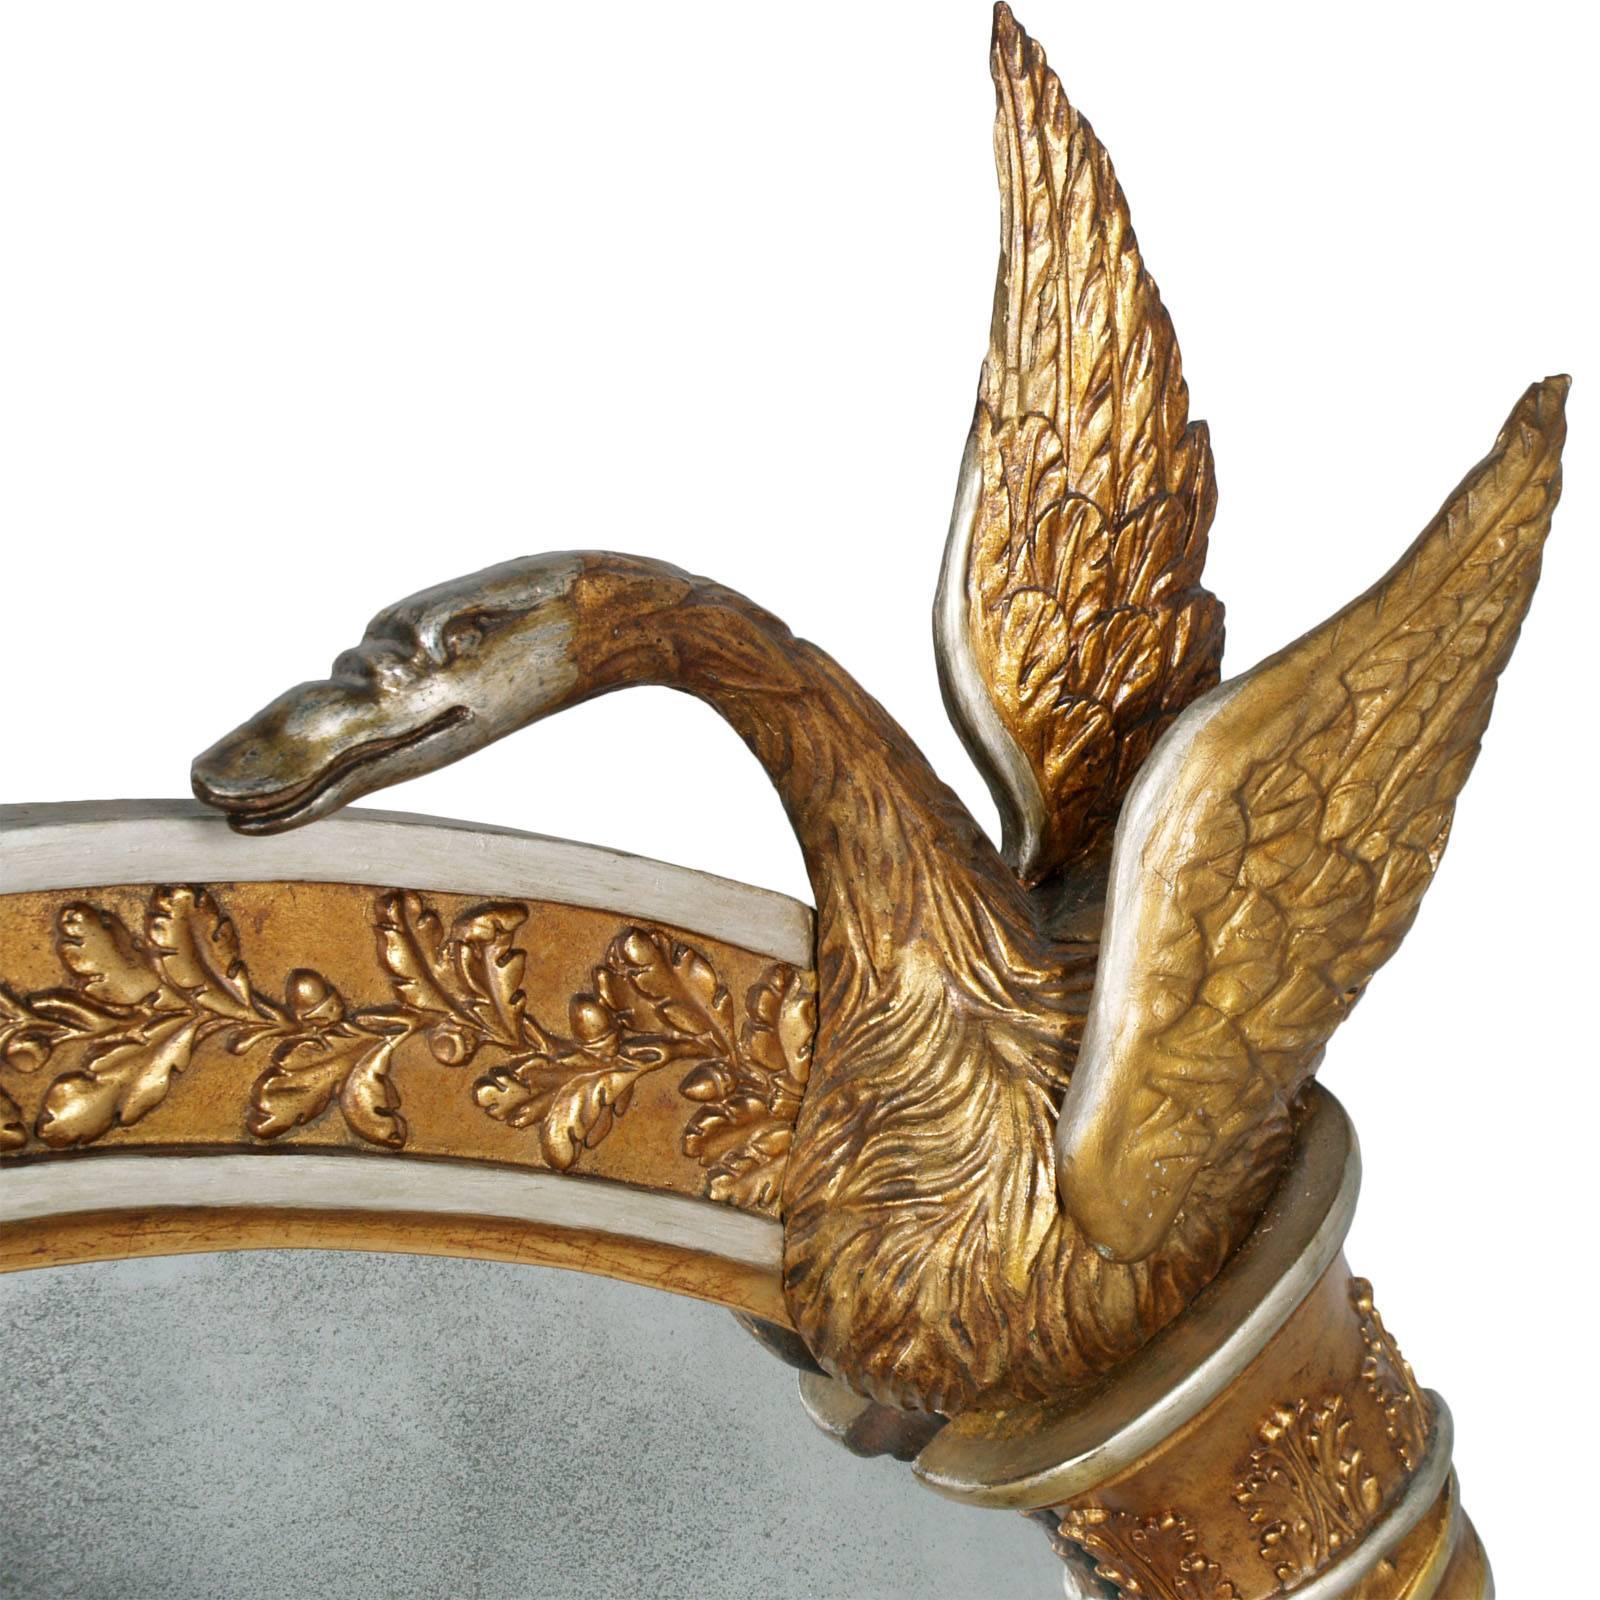 Important miroir réalisé par les Verreries Artistiques Testolini de Venise, pour l'Empire des Habsbourg de Vienne. Le précieux miroir est sculpté à la main et entièrement décoré de feuilles d'or, de cuivre et d'argent. 
Original dans son